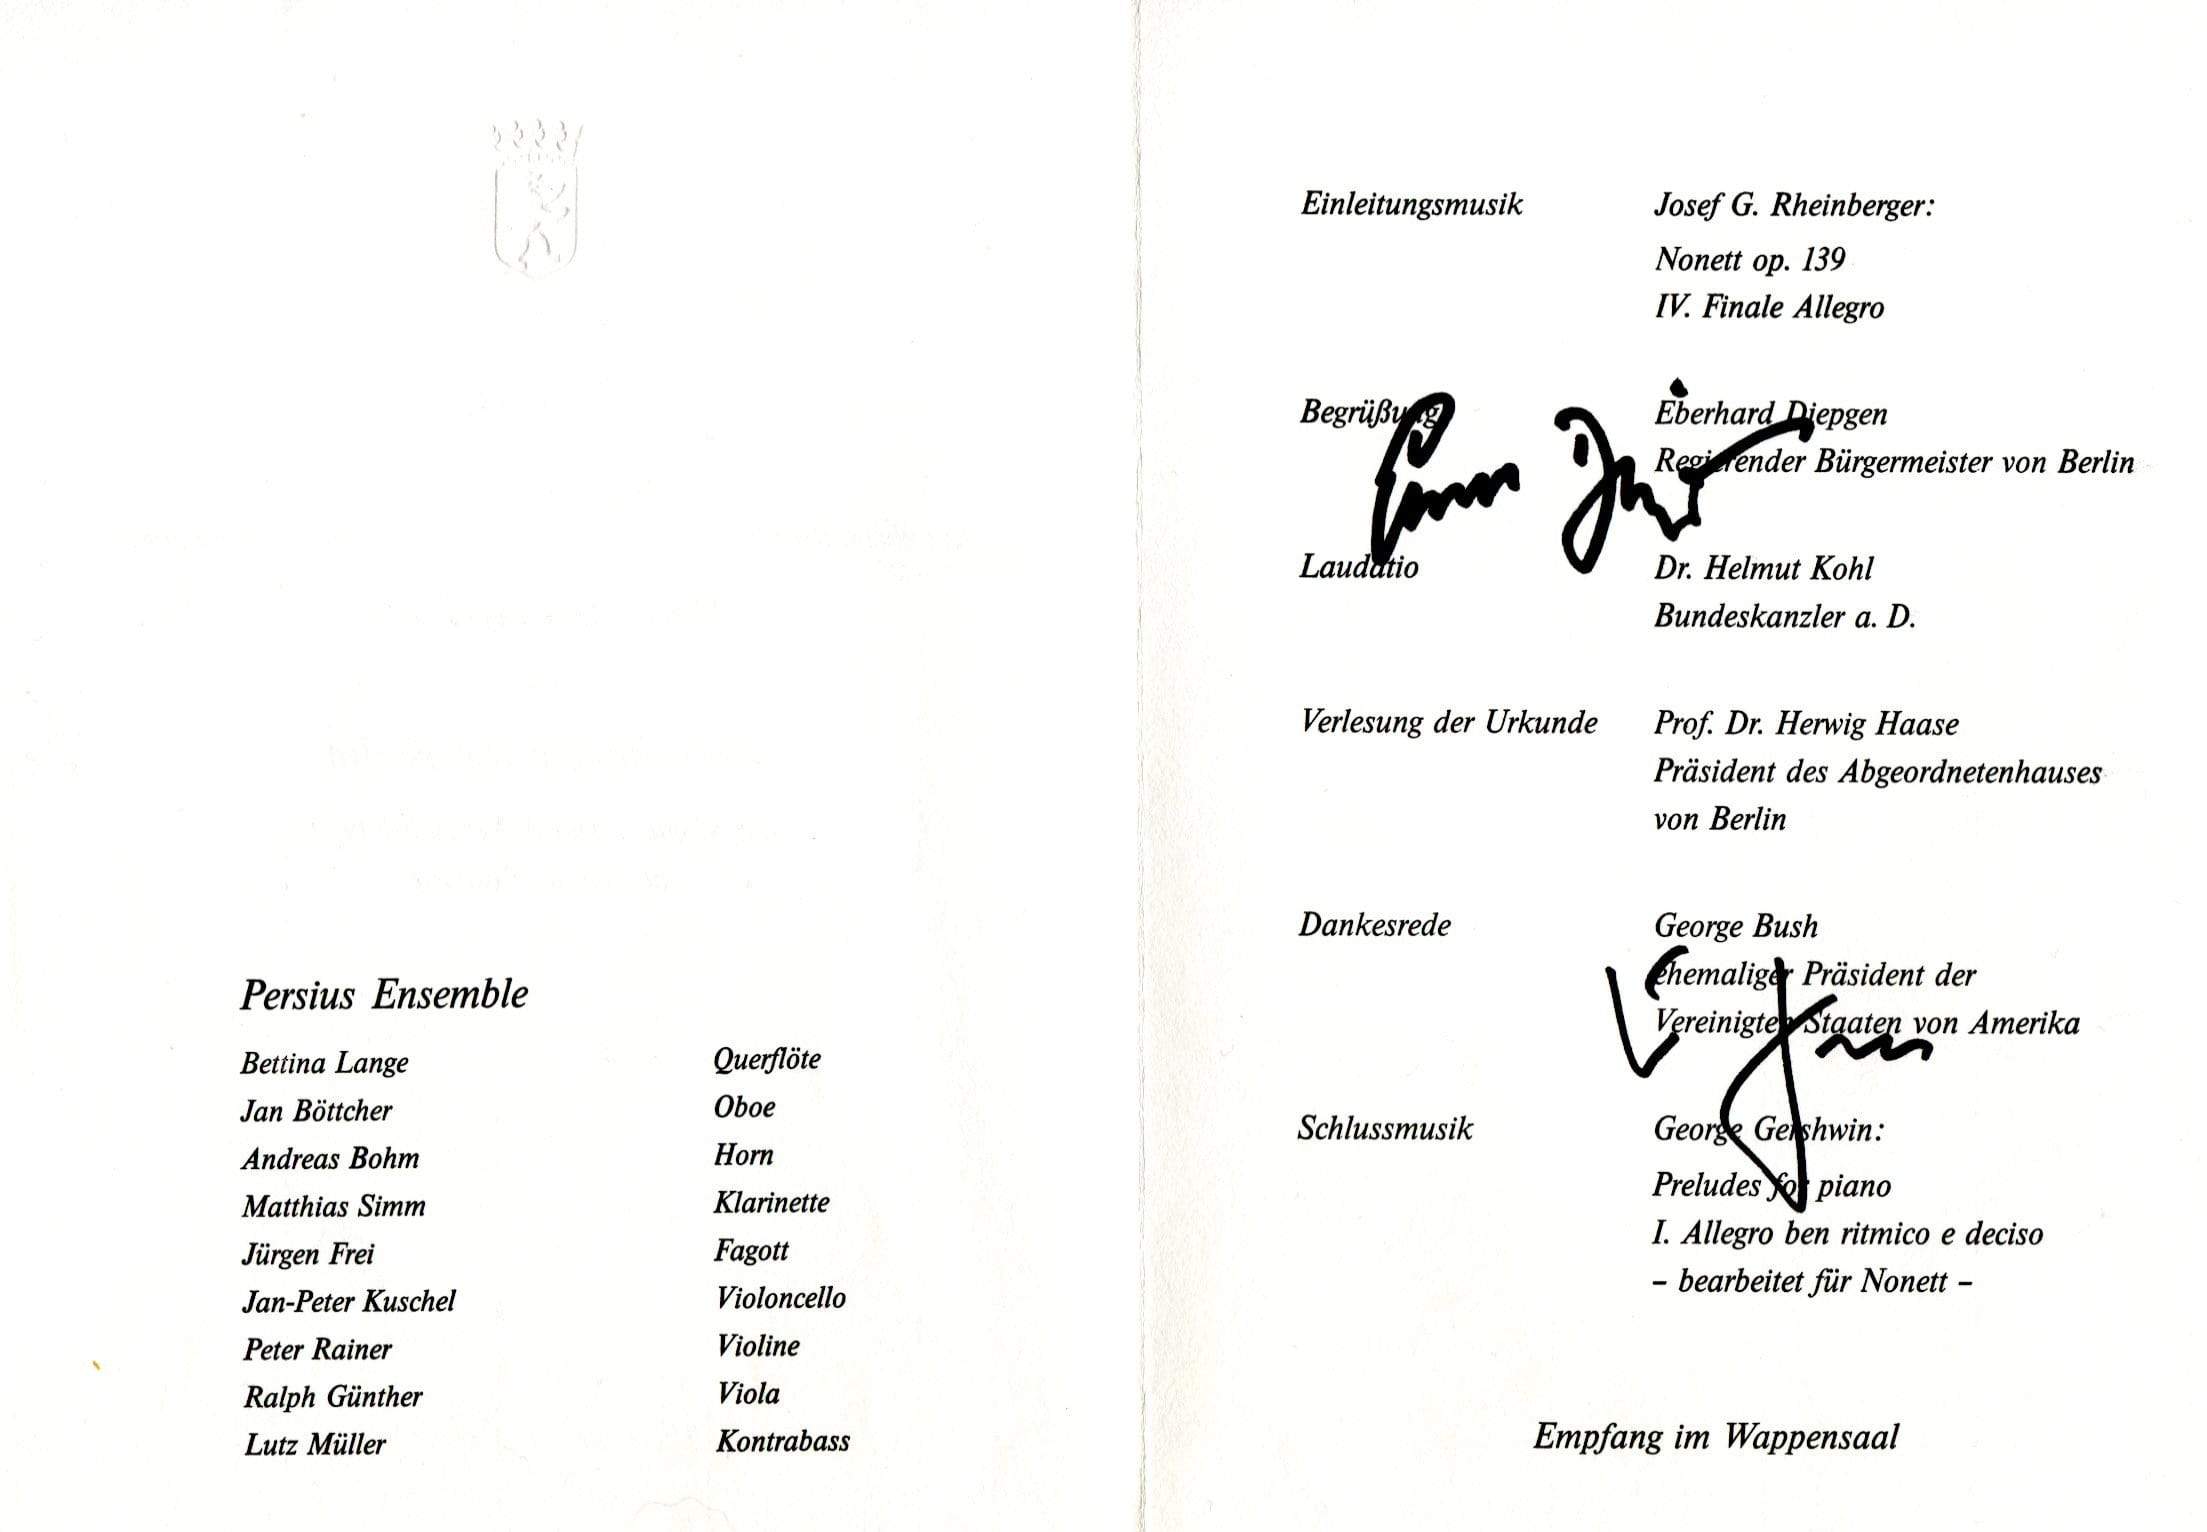 Kohl, Helmut & Diepgen, Eberhard autograph